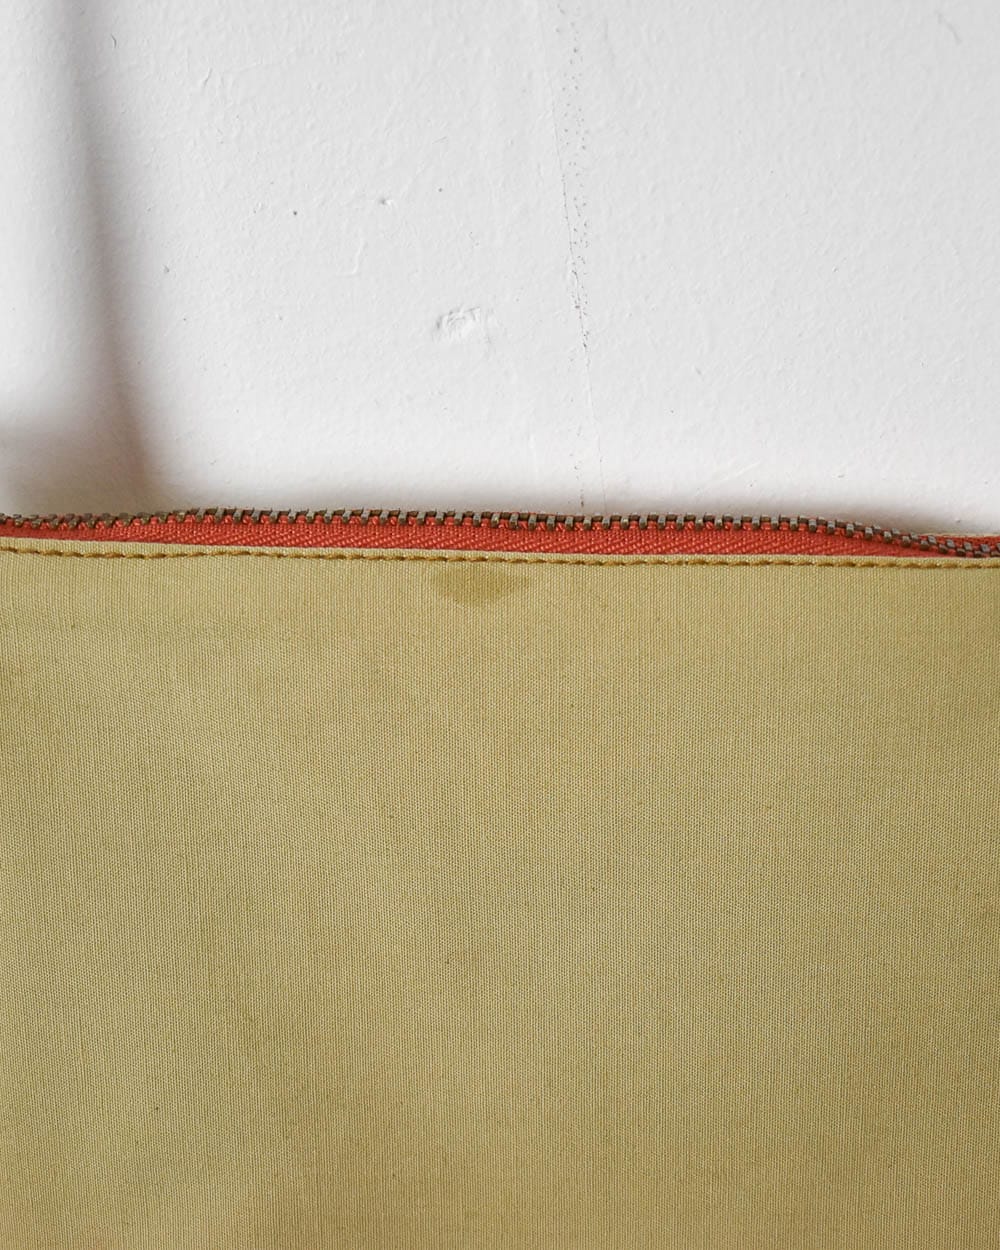 Vintage Carhartt Reworked Shoulder Bag - W L Cotton – Domno Vintage